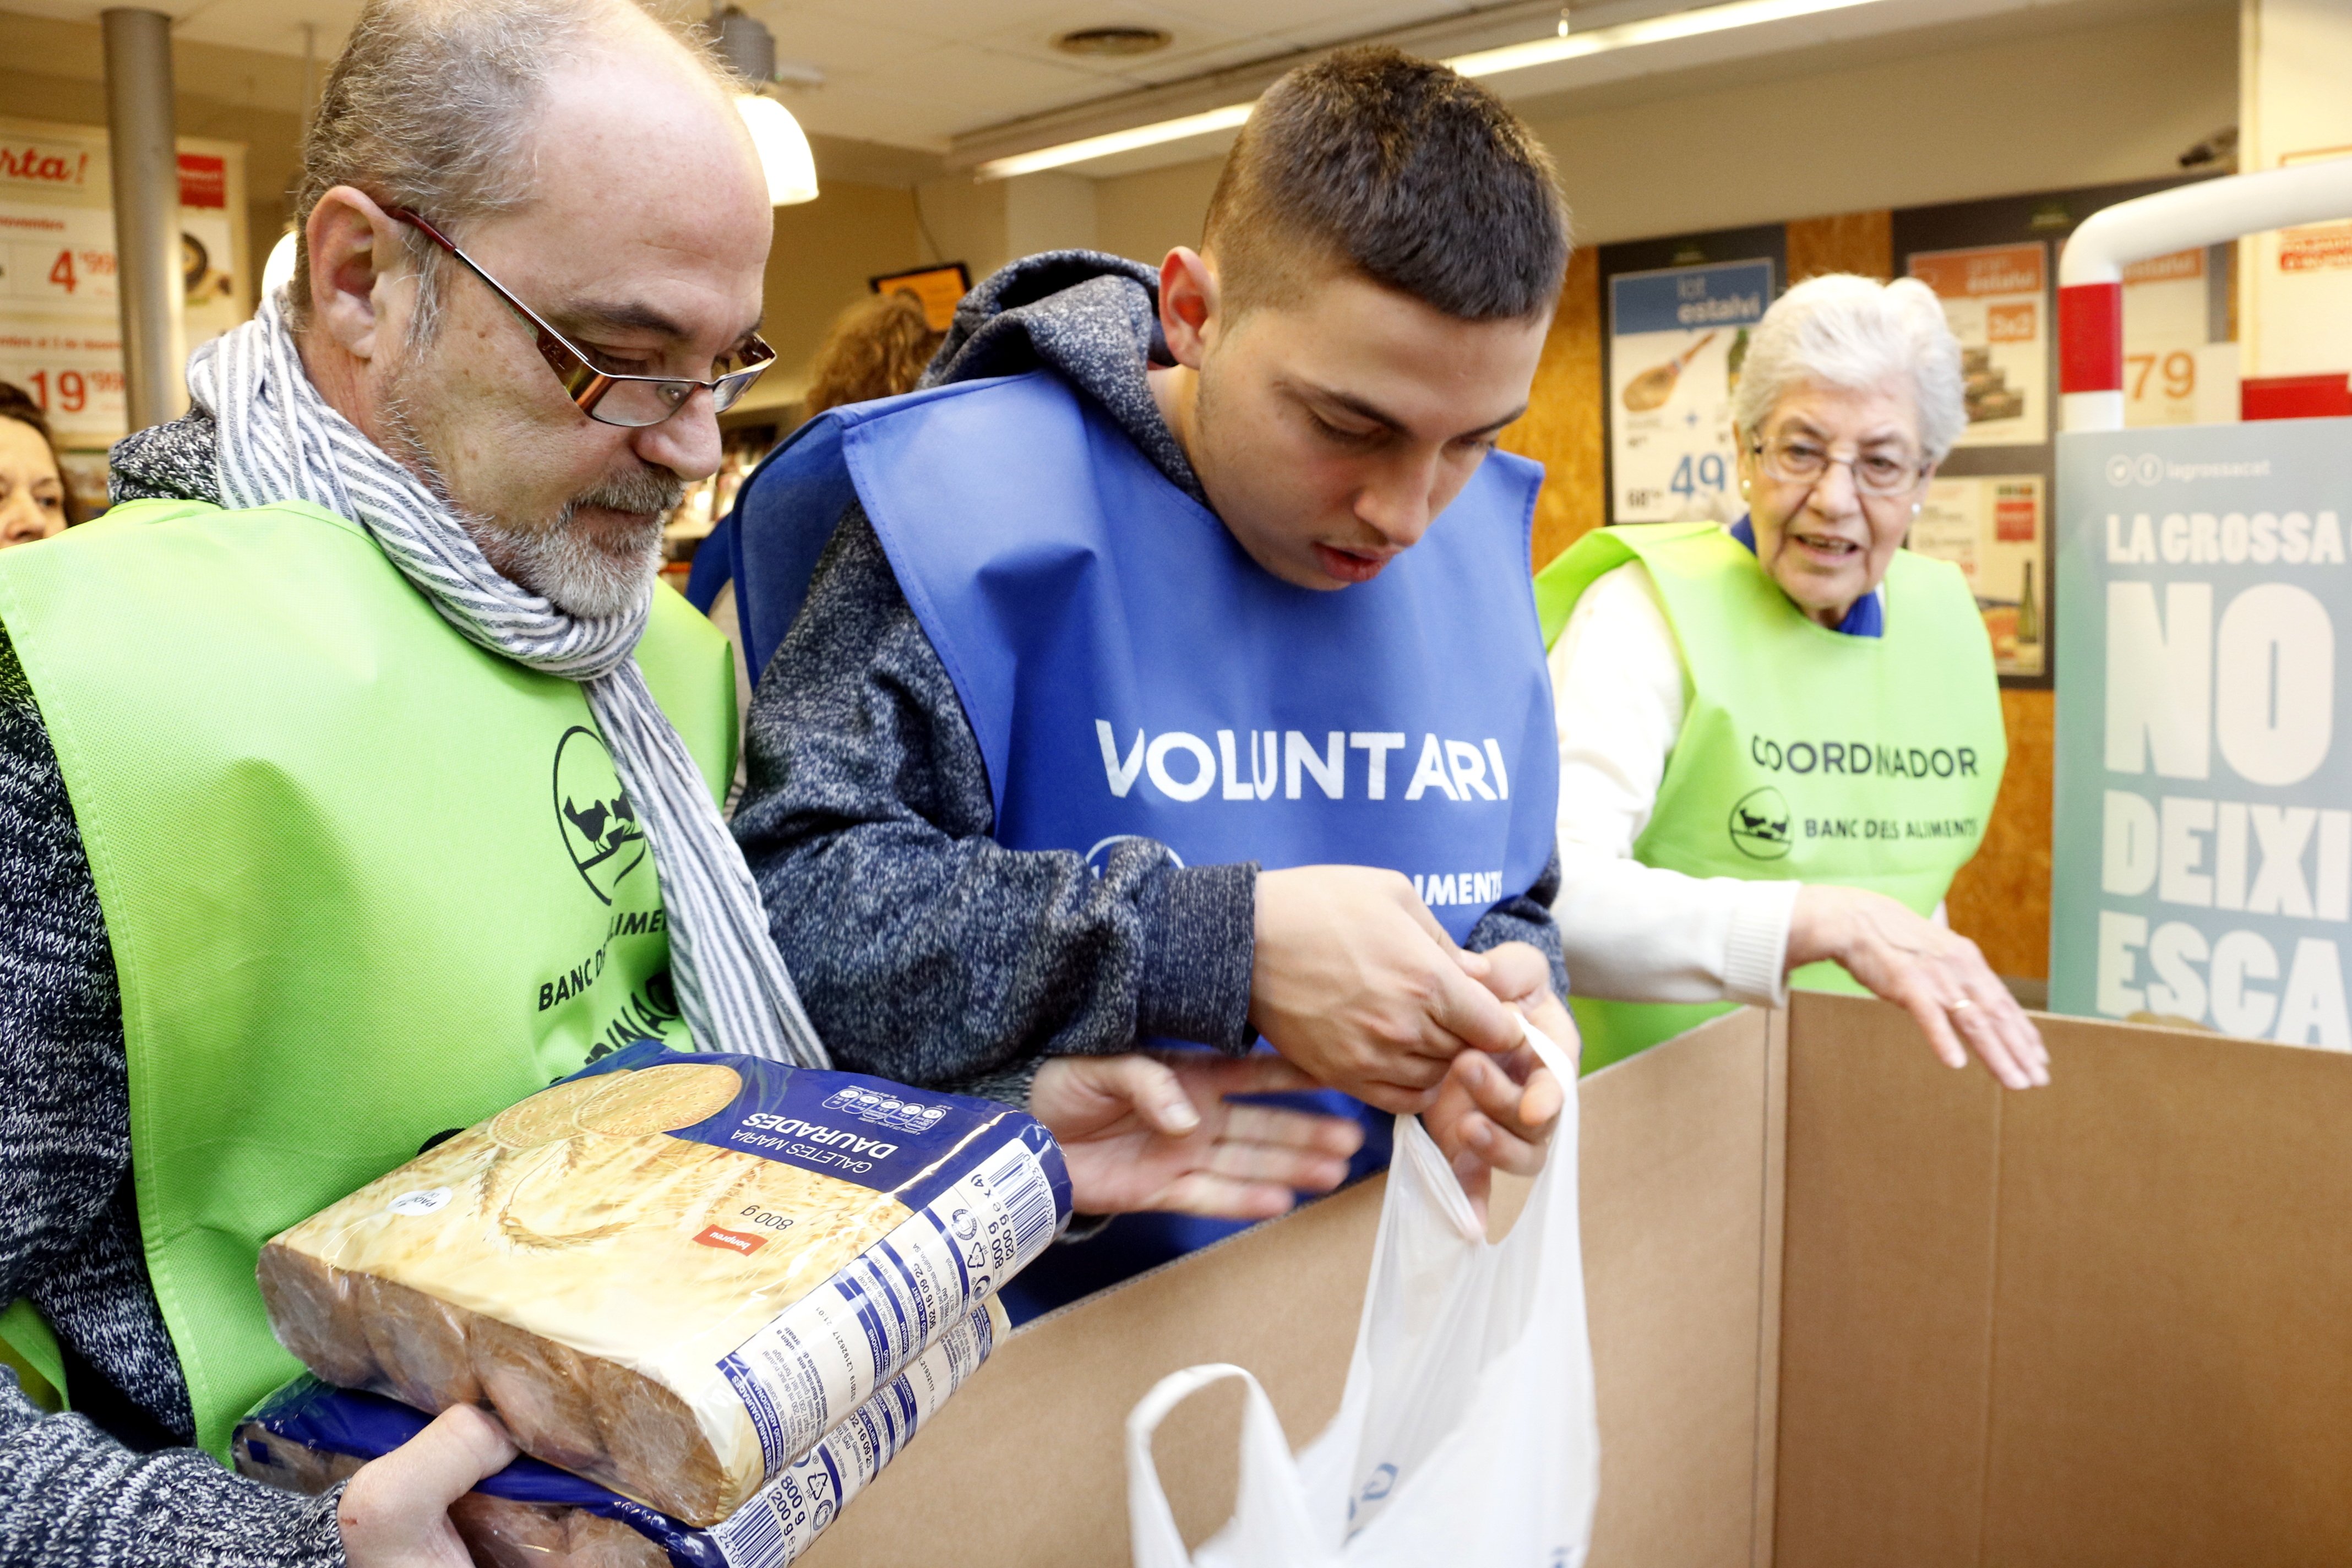 SOS del Banc dels Aliments: faltan 9.000 voluntarios para el Gran Recapte